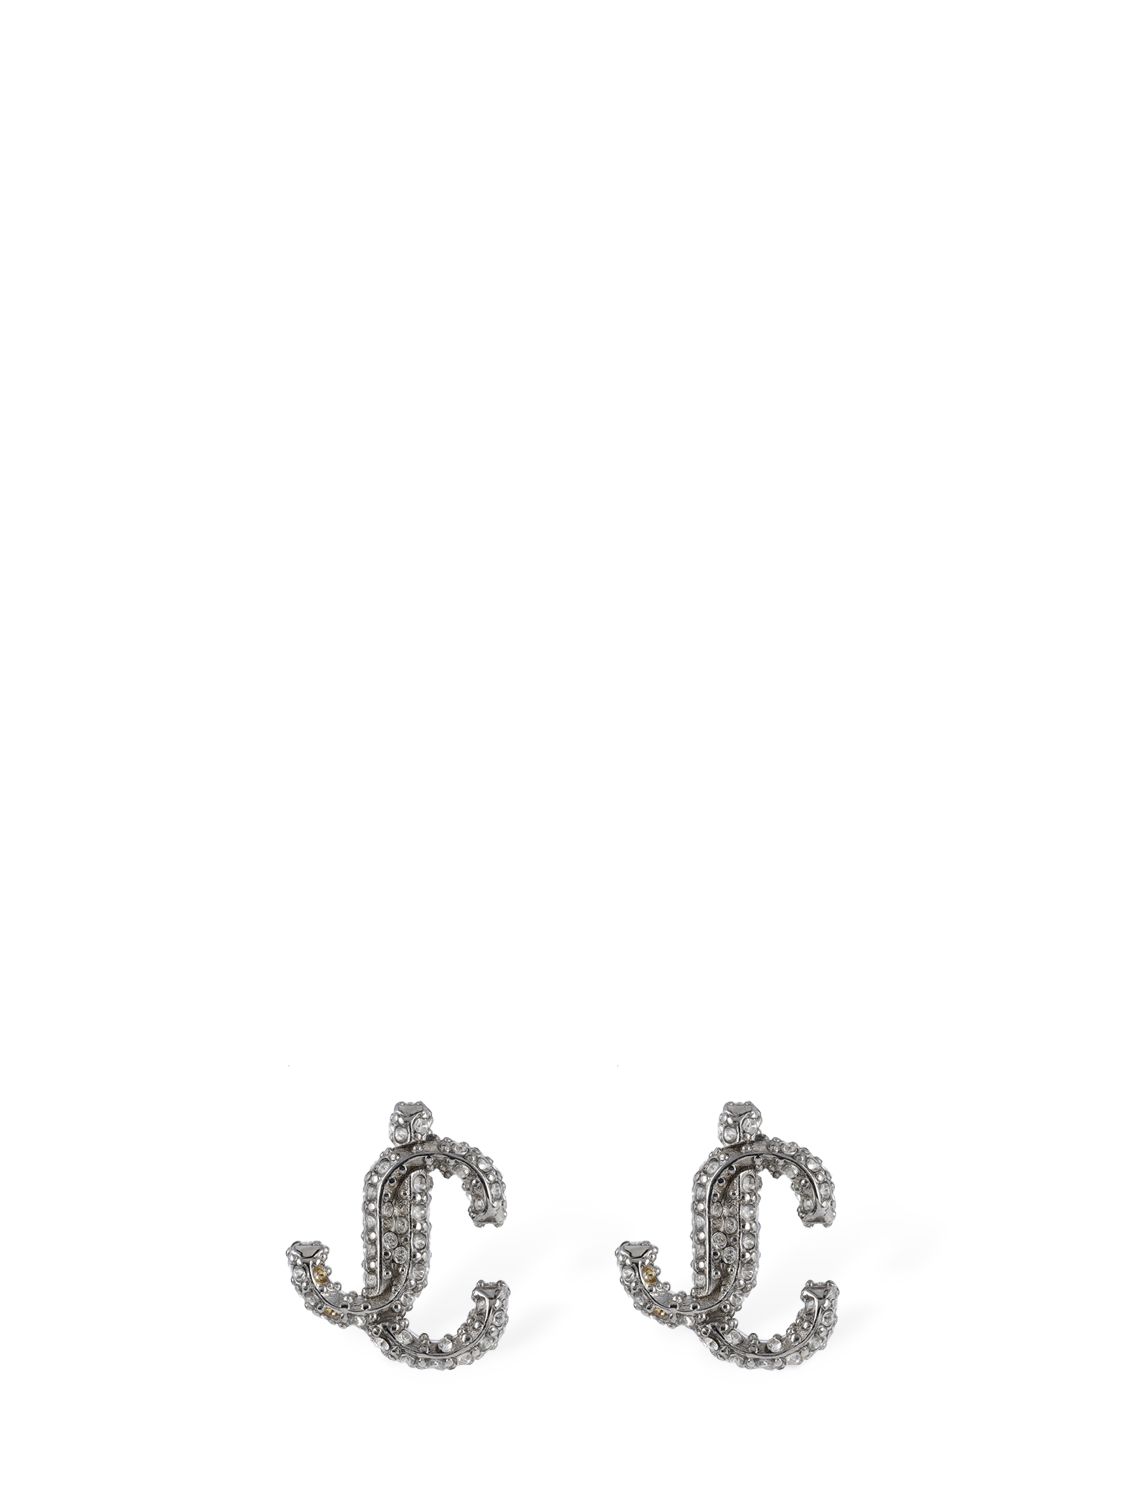 Jc Crystal Stud Earrings